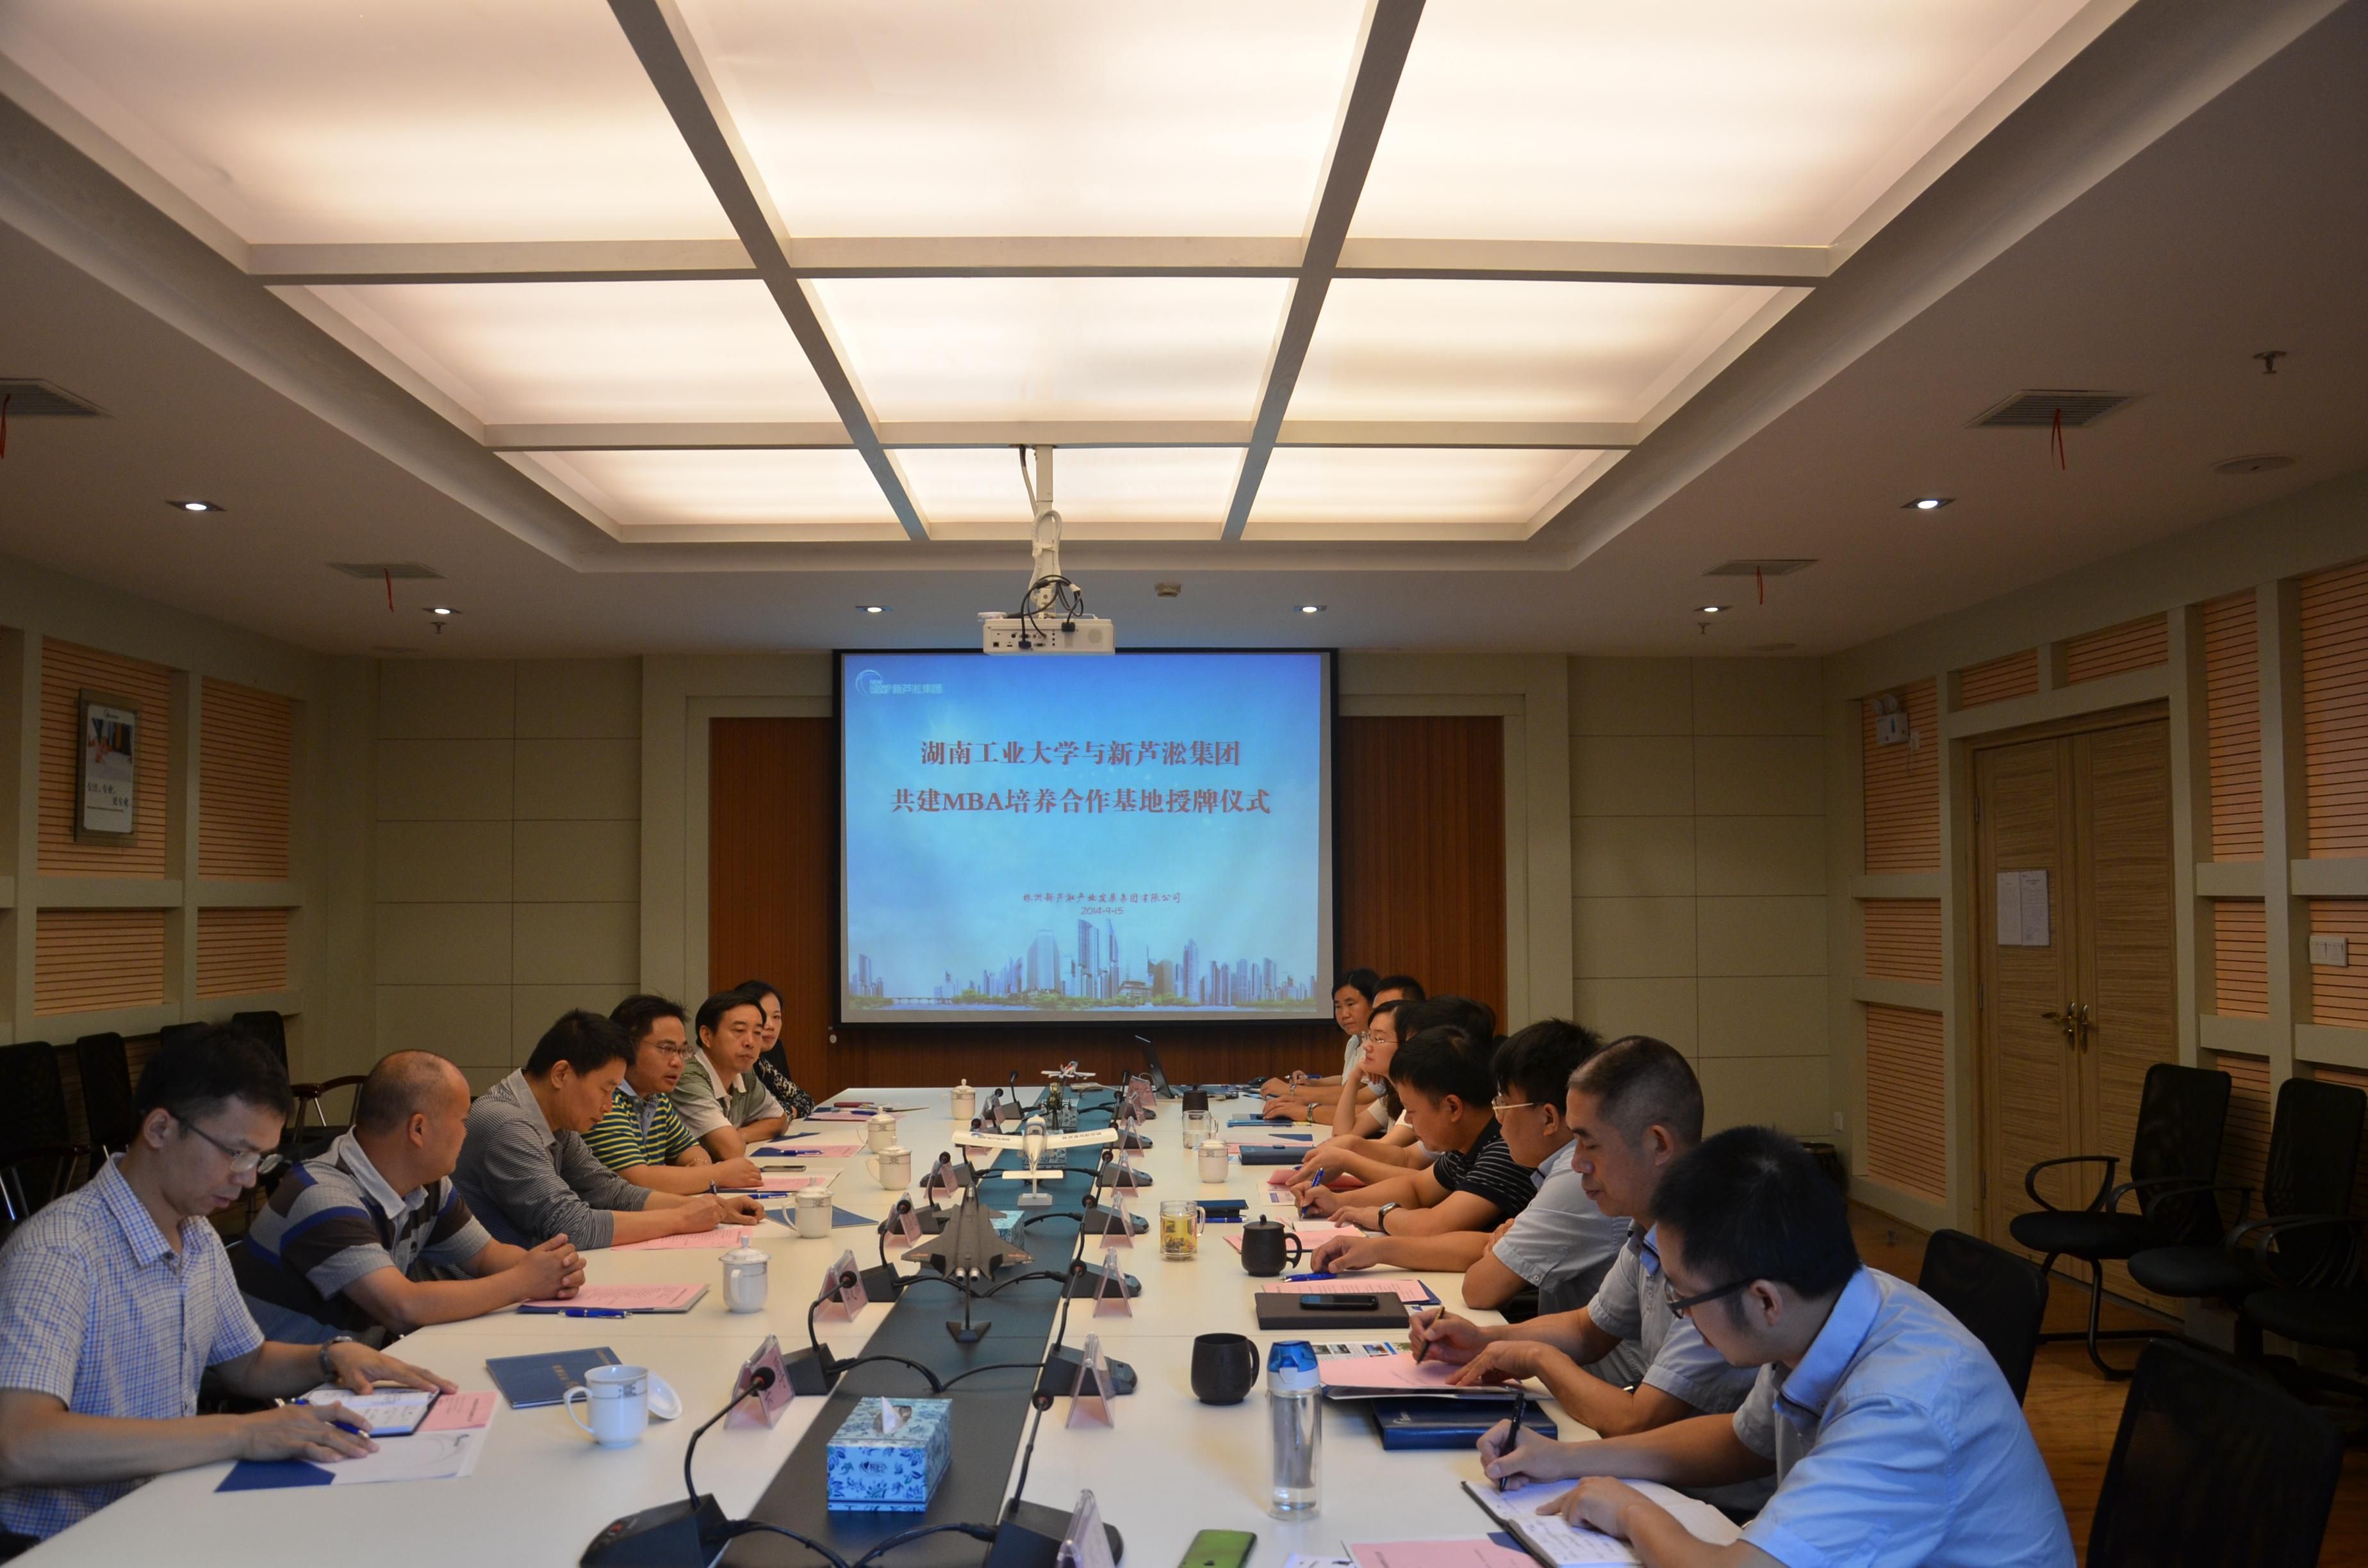 新芦淞集团举行湖南工业大学MBA培养合作基地授牌仪式